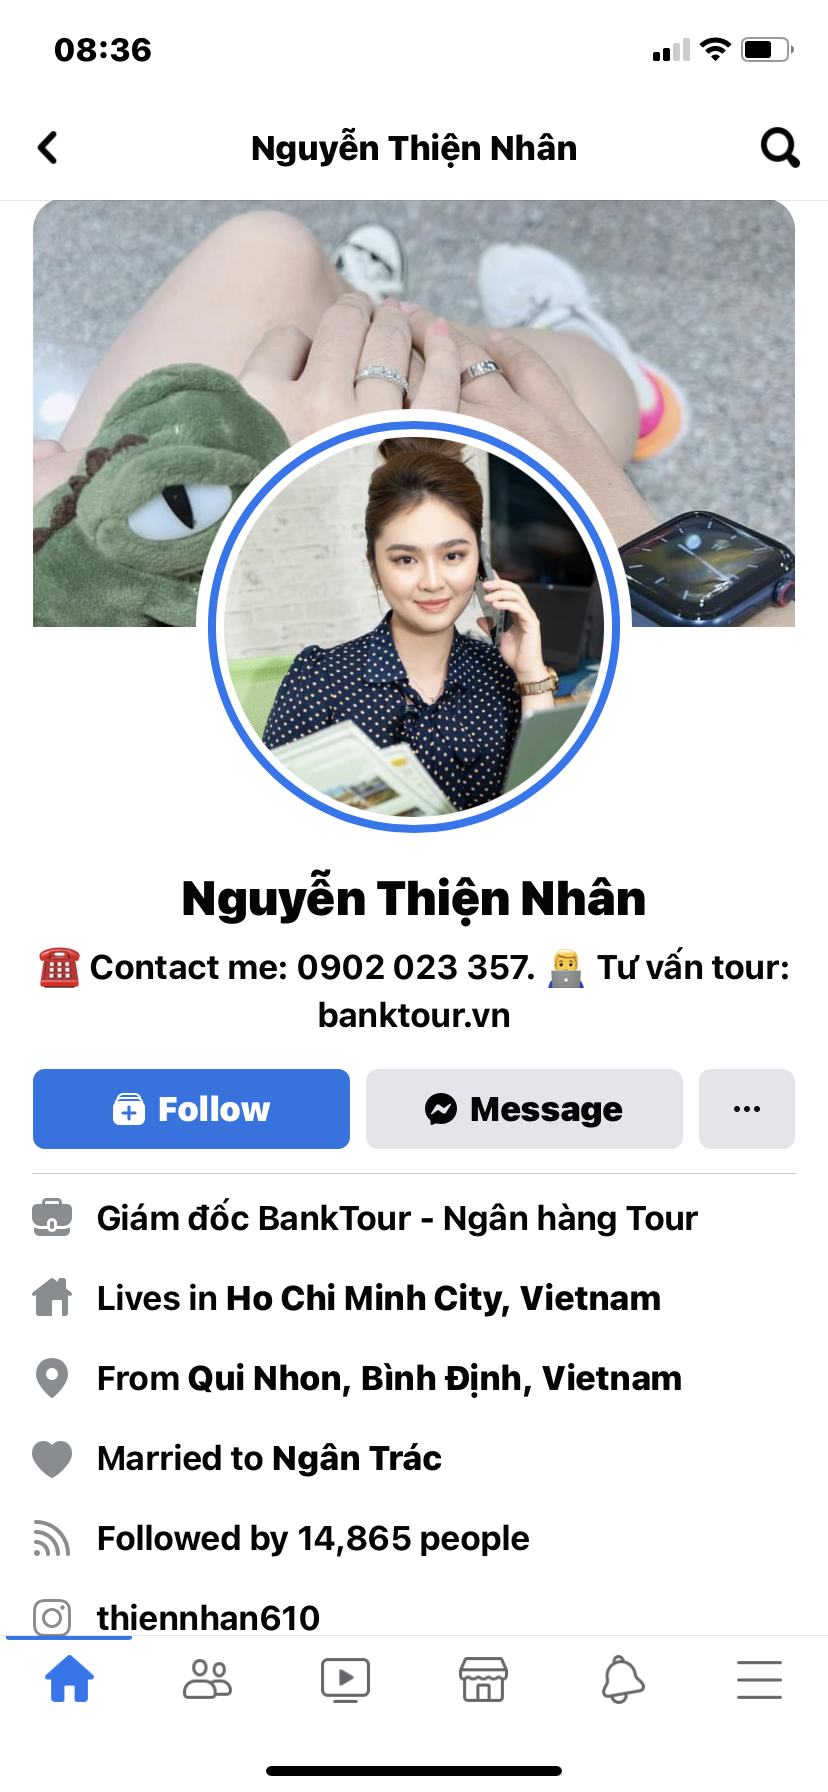 Gia đình báo mất tích, ca sĩ nhí Nguyễn Thiện Nhân nói gì? - Ảnh 1.